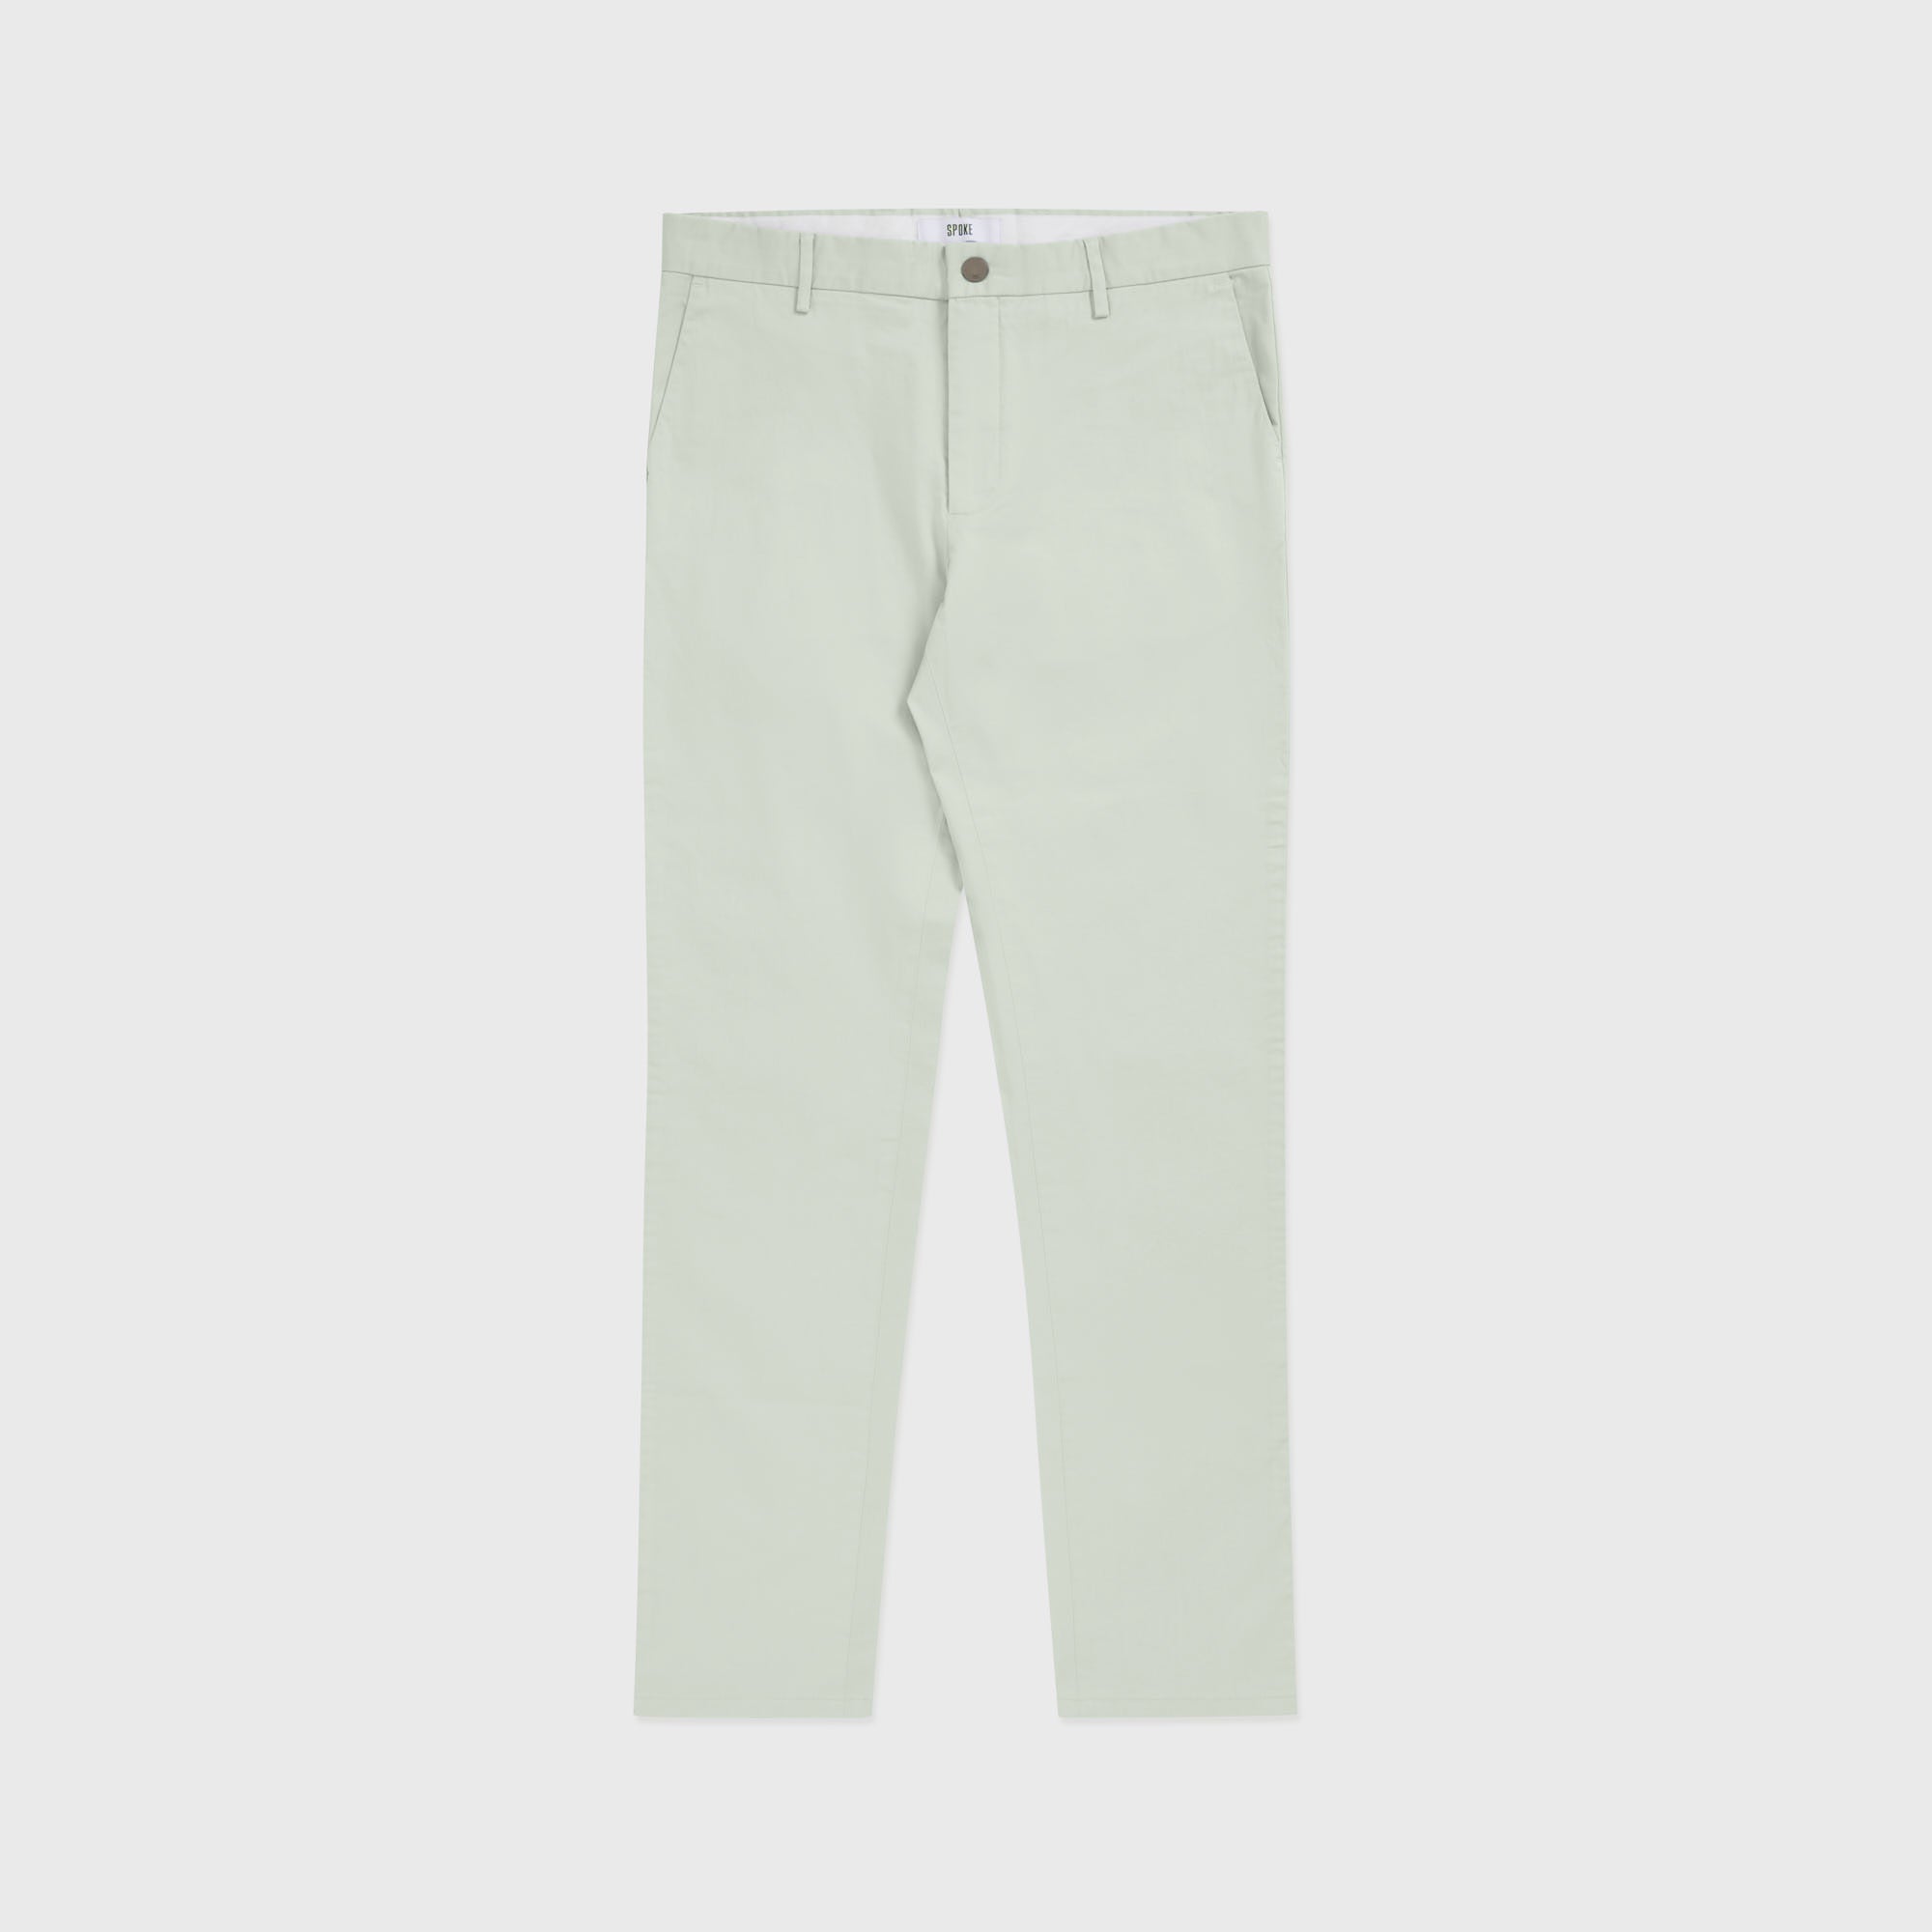 Aqua Grey Summer Sharps - Custom-Fit Cooling Men's Trousers - SPOKE - SPOKE